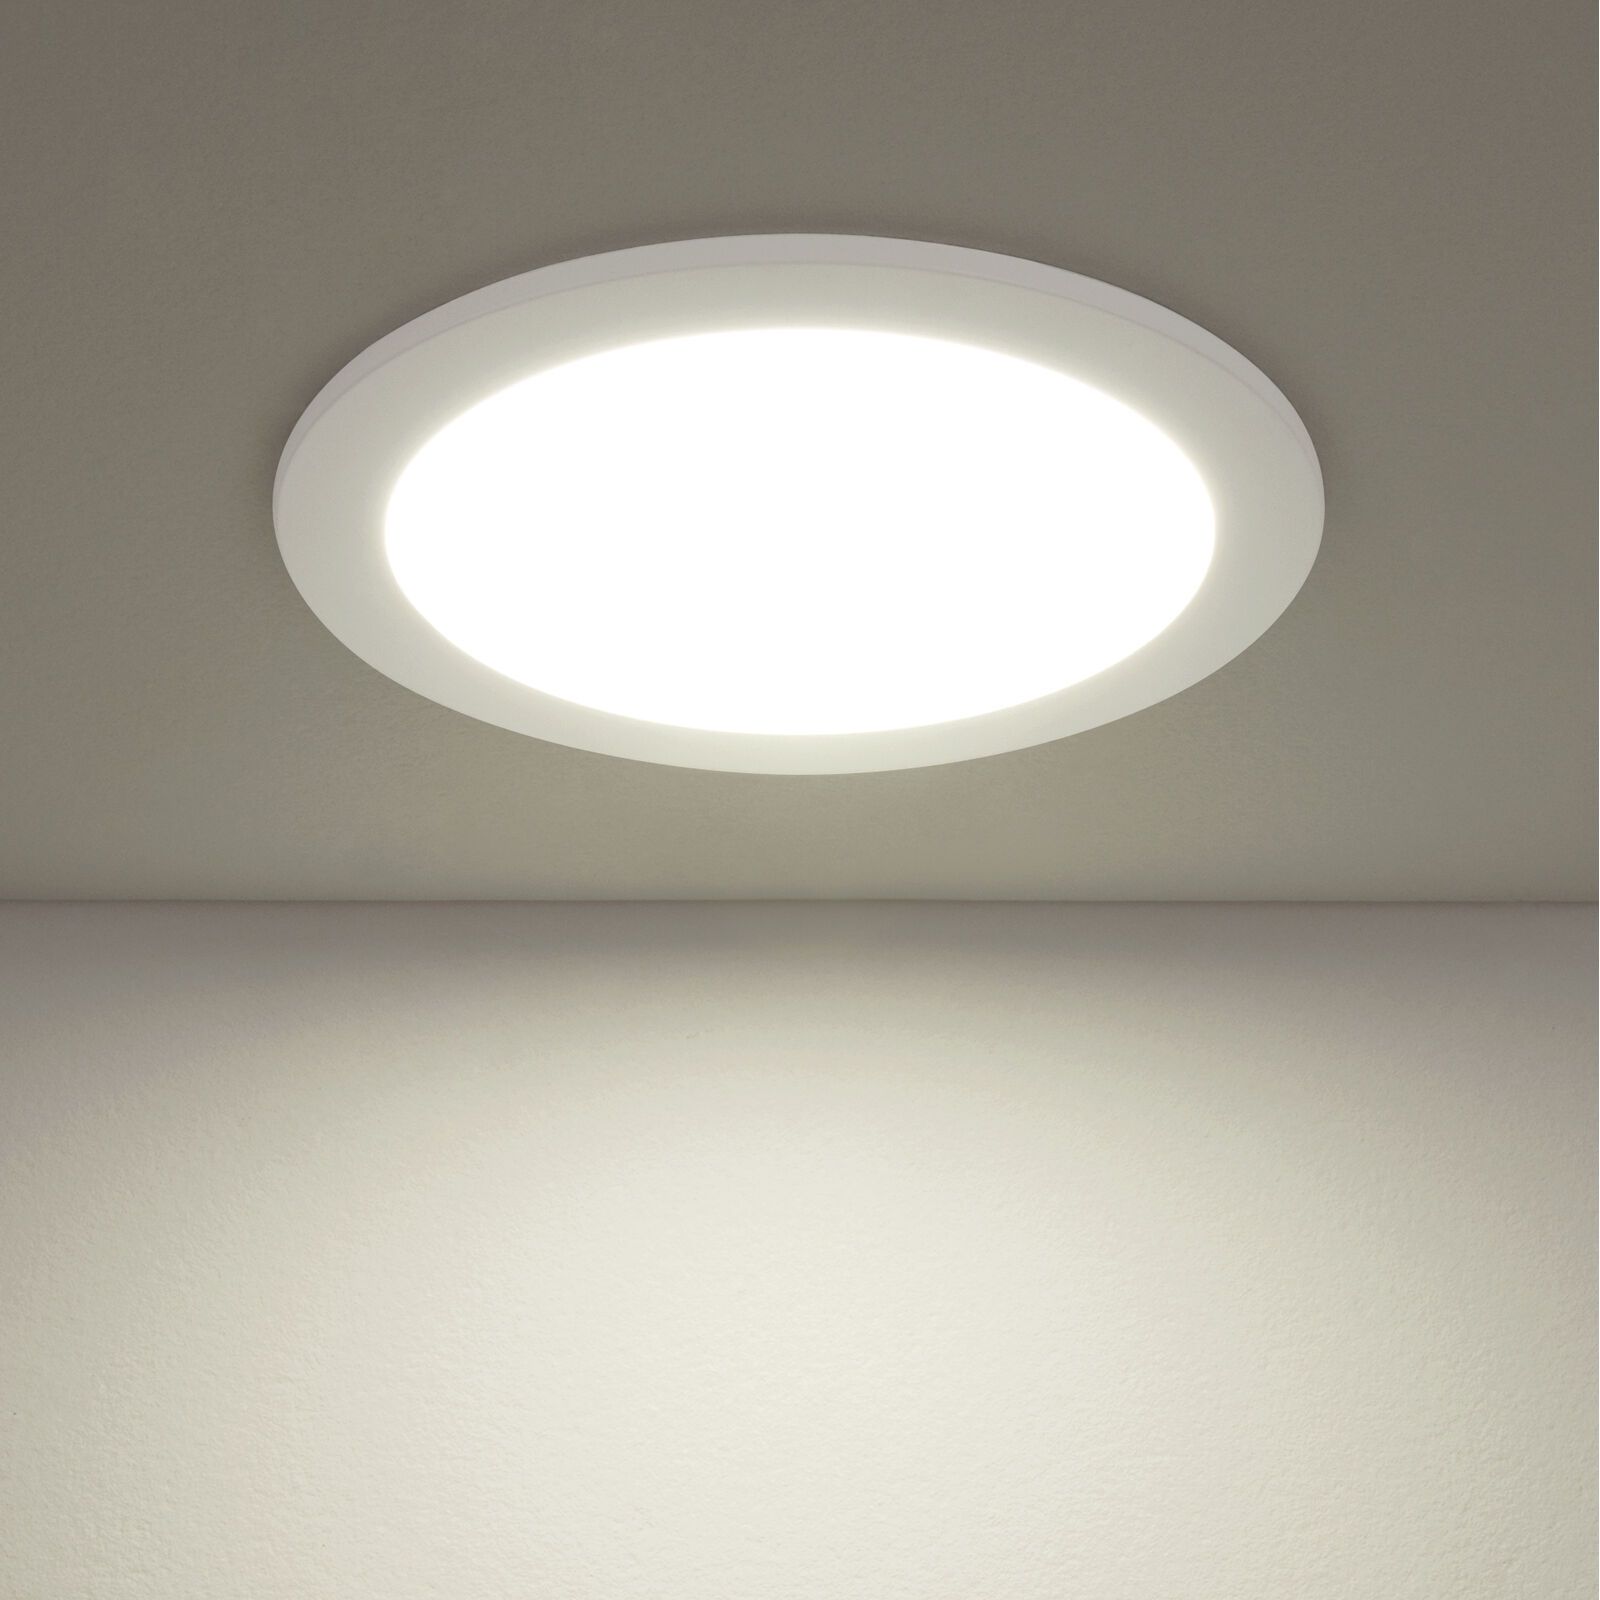 Встраиваемый потолочный светодиодный светильник dlr004 12w 4200k WH белый